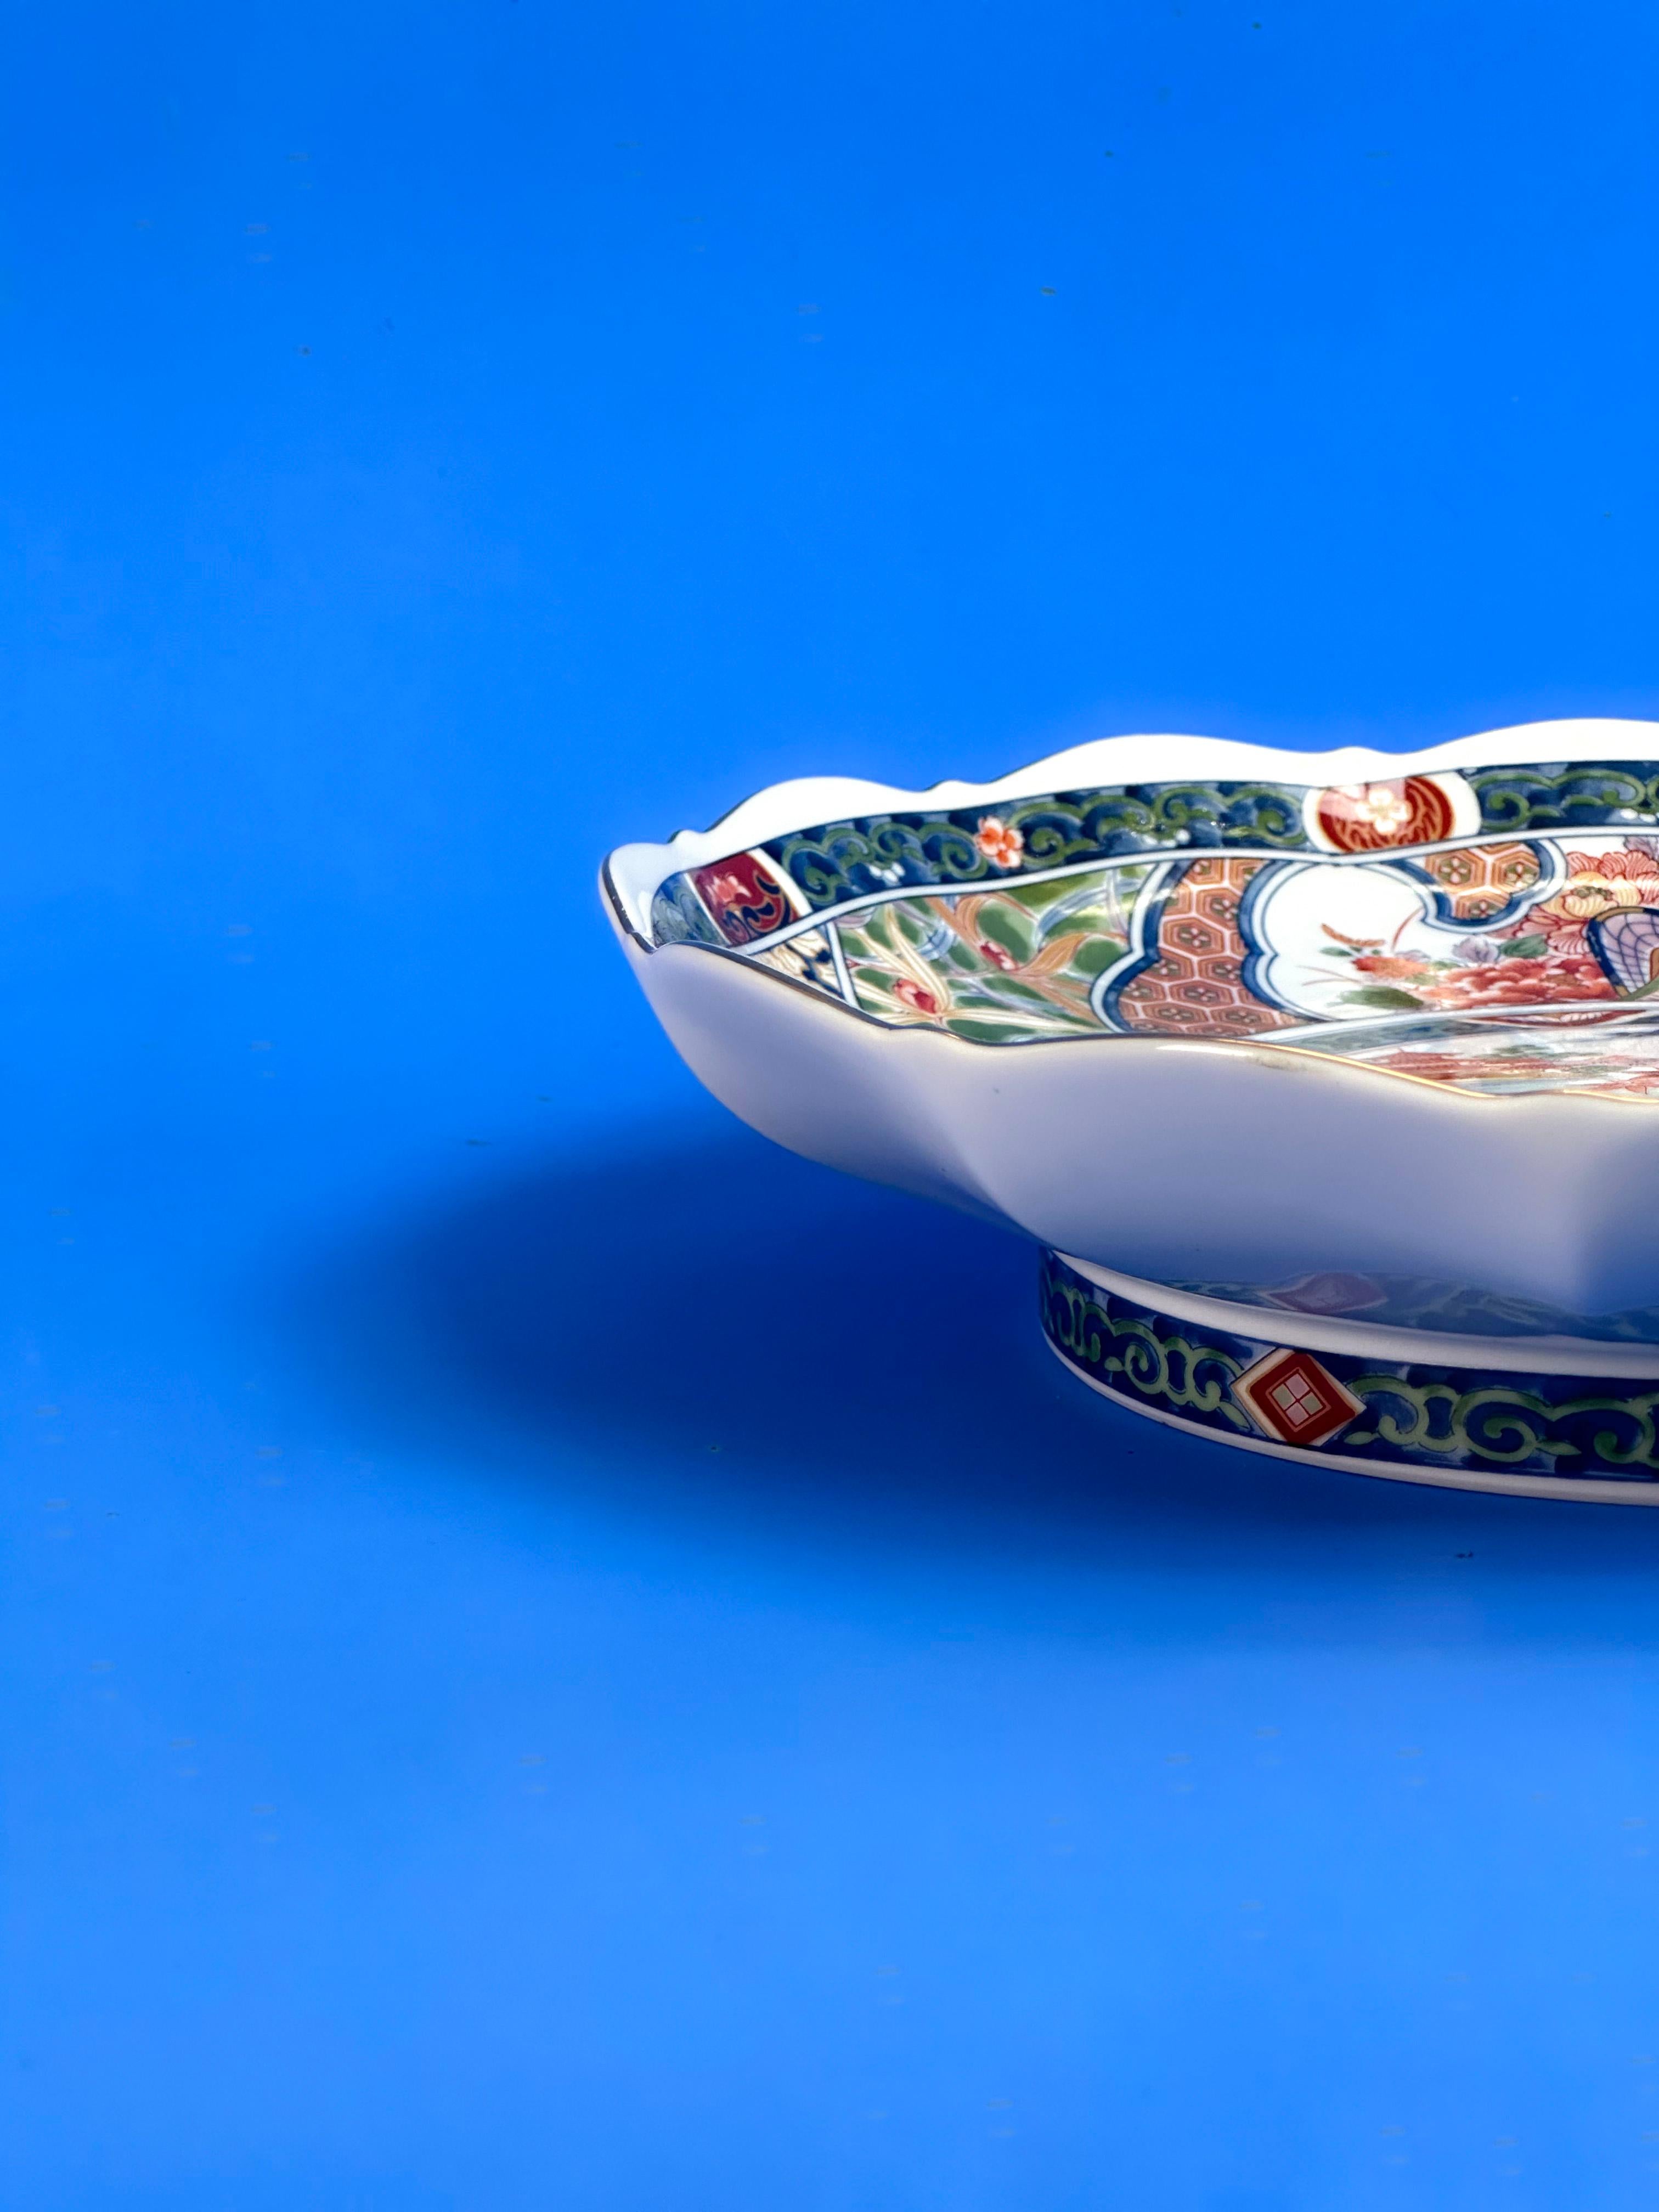 Eine japanische Porzellan-Servierplatte im Vintage-Stil.

Die in den 1980er Jahren in Japan handgefertigte Servierplatte zeigt eine aufwendige japanische Szene und Ornamente, die auf einem traditionellen Imari-Muster basieren und in traditionellen